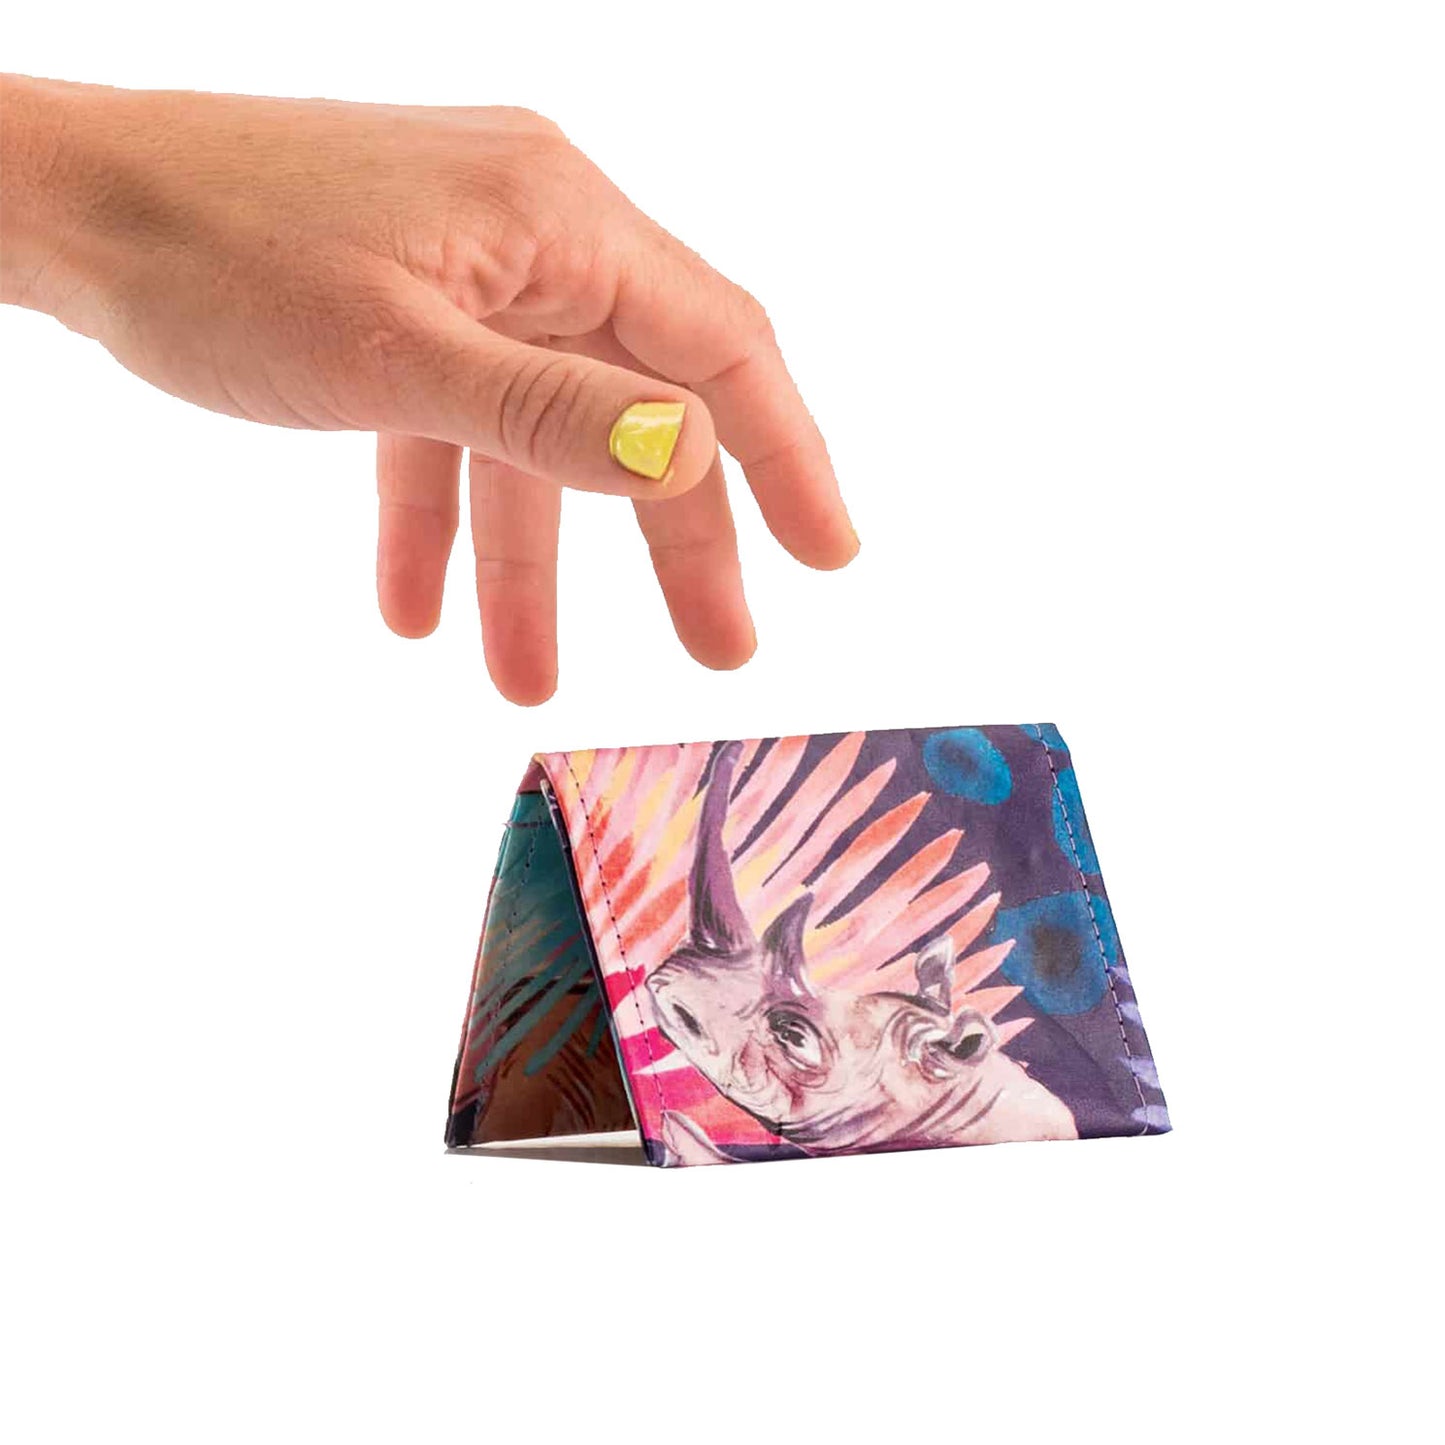 Porta carta di credito con illustrazione Rinoceronte